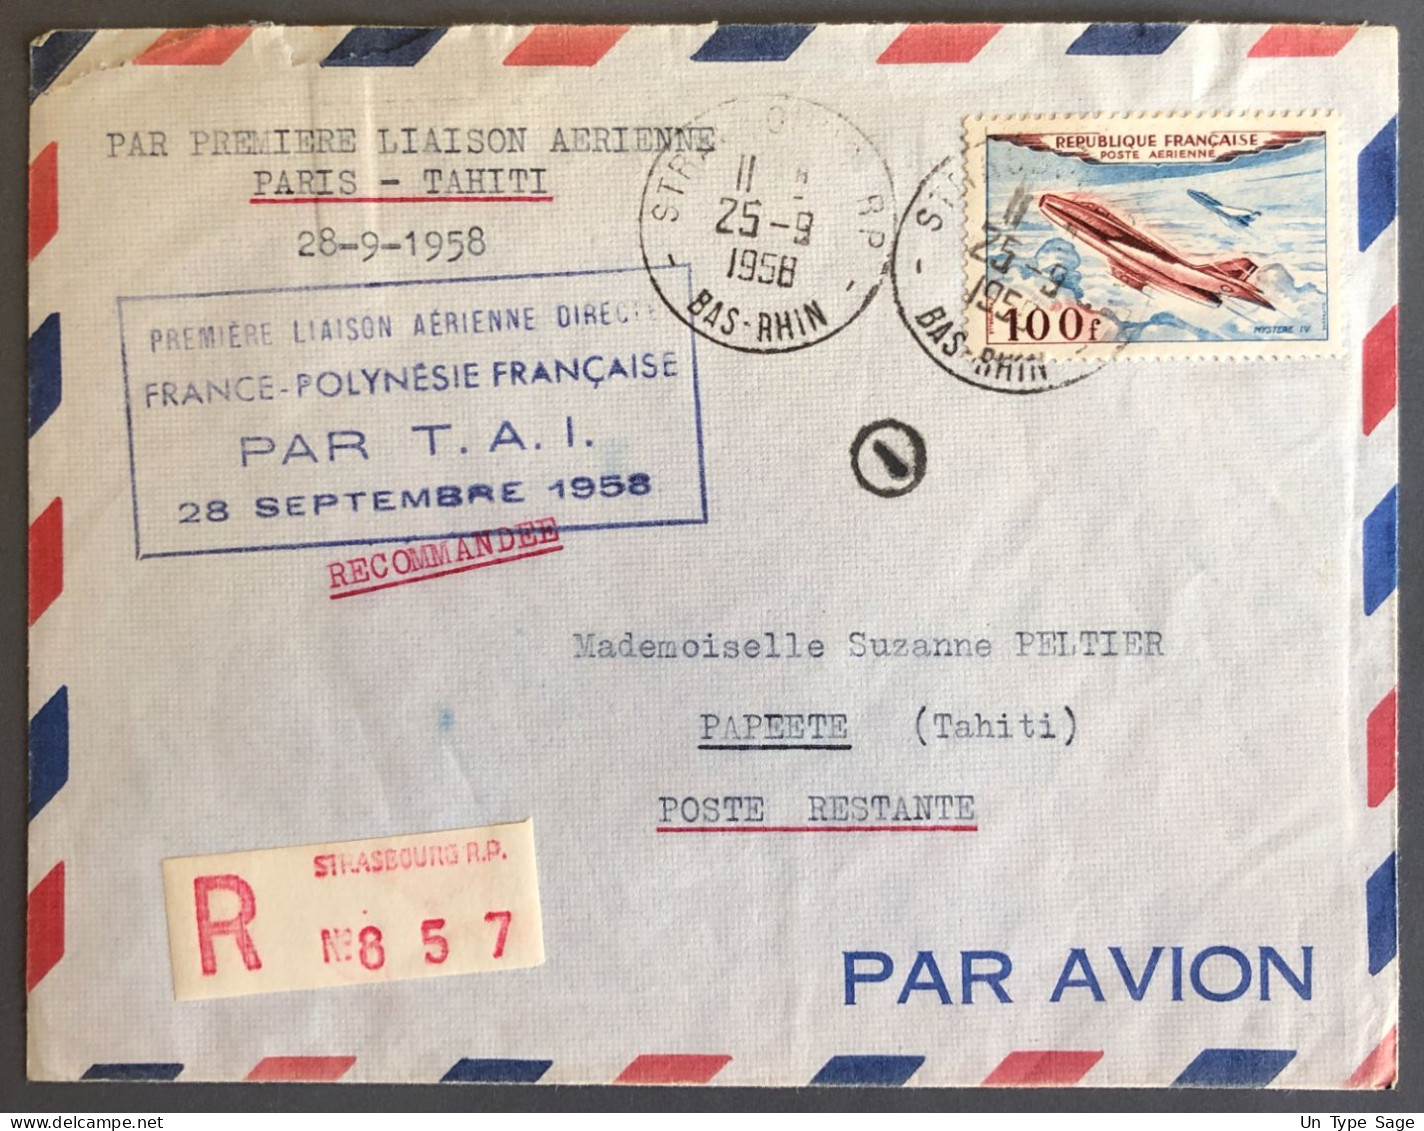 France, Premier Vol Direct FRANCE / POLYNESIE FRANCAISE Par T.A.I. 28.9.1958 Sur Enveloppe - (W1199) - Premiers Vols